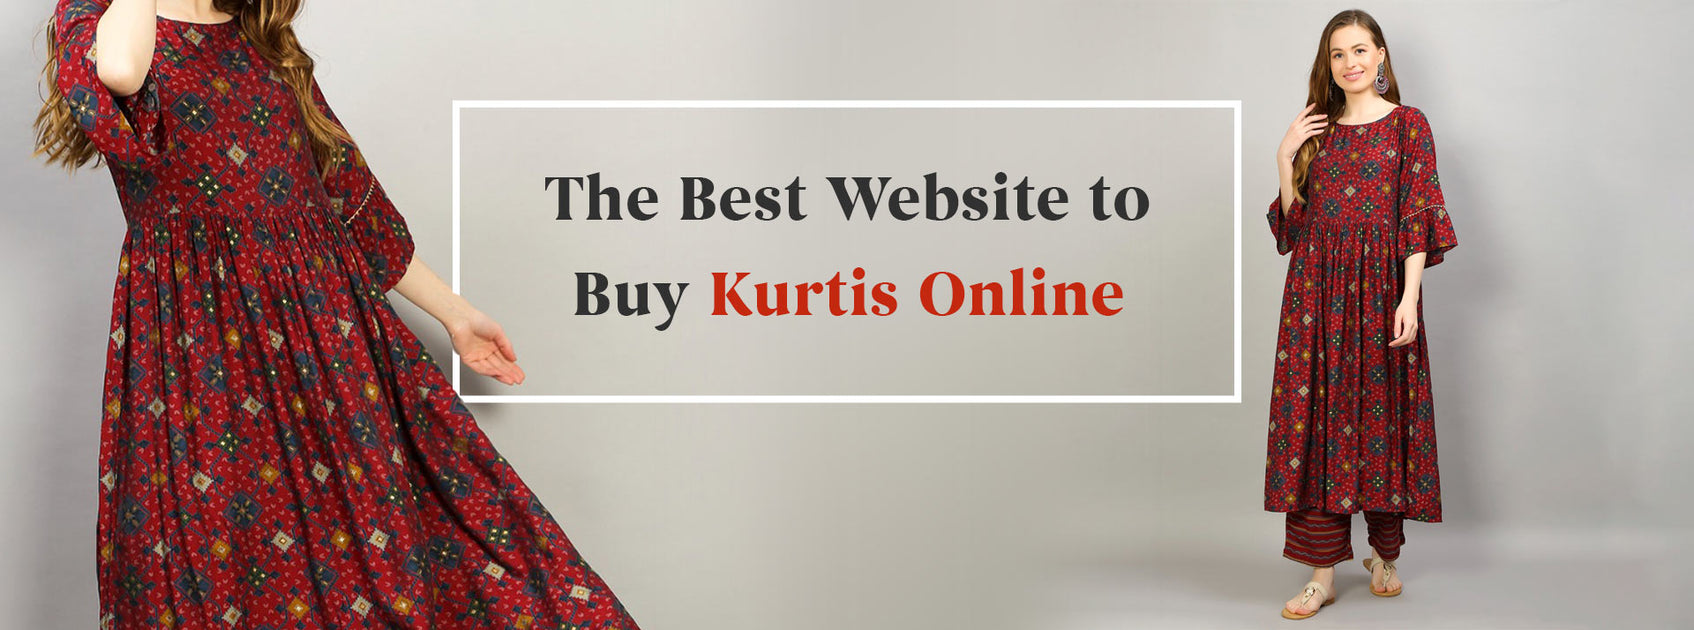 Designer Kurtis - Buy Kurti Online, Shop Women Kurta in India | Kurti, Kurti  designs, Designer kurtis online